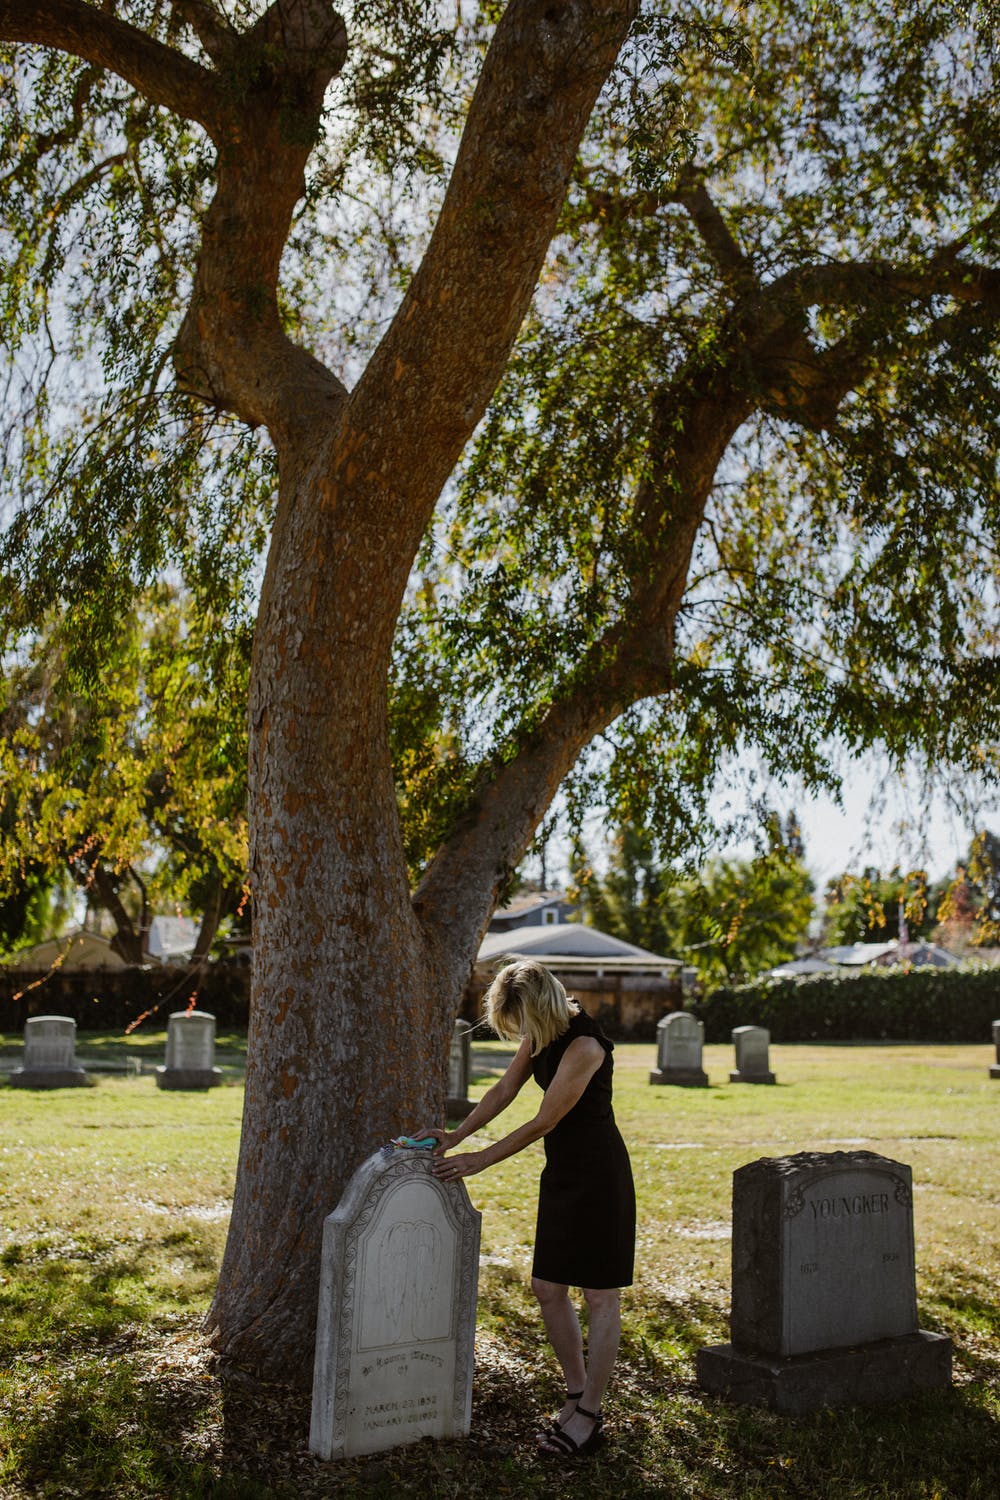 Gary sah eine Frau am Grab seiner Mutter stehen | Quelle: Pexels